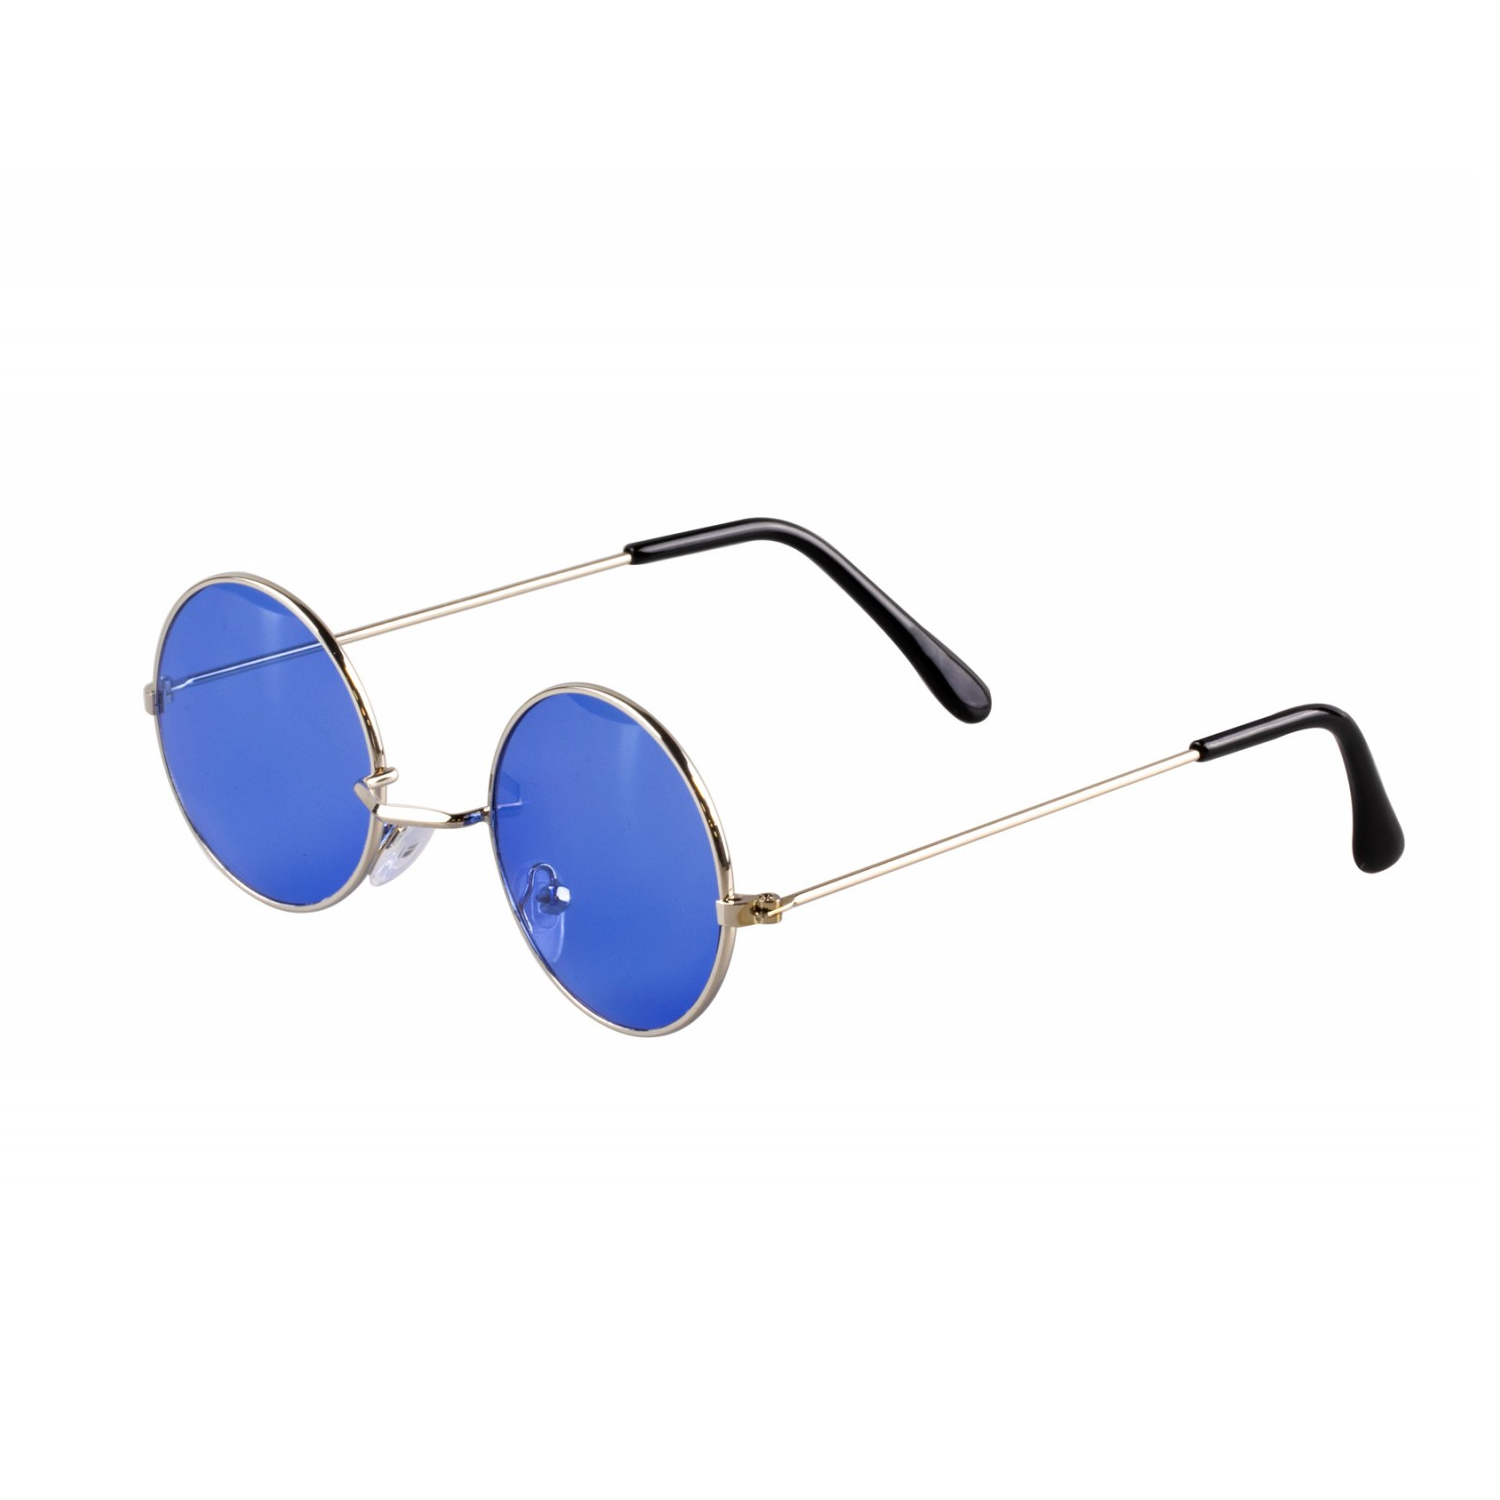 Brille Hippie, runde, blaue Gläser aus Metall - Blau